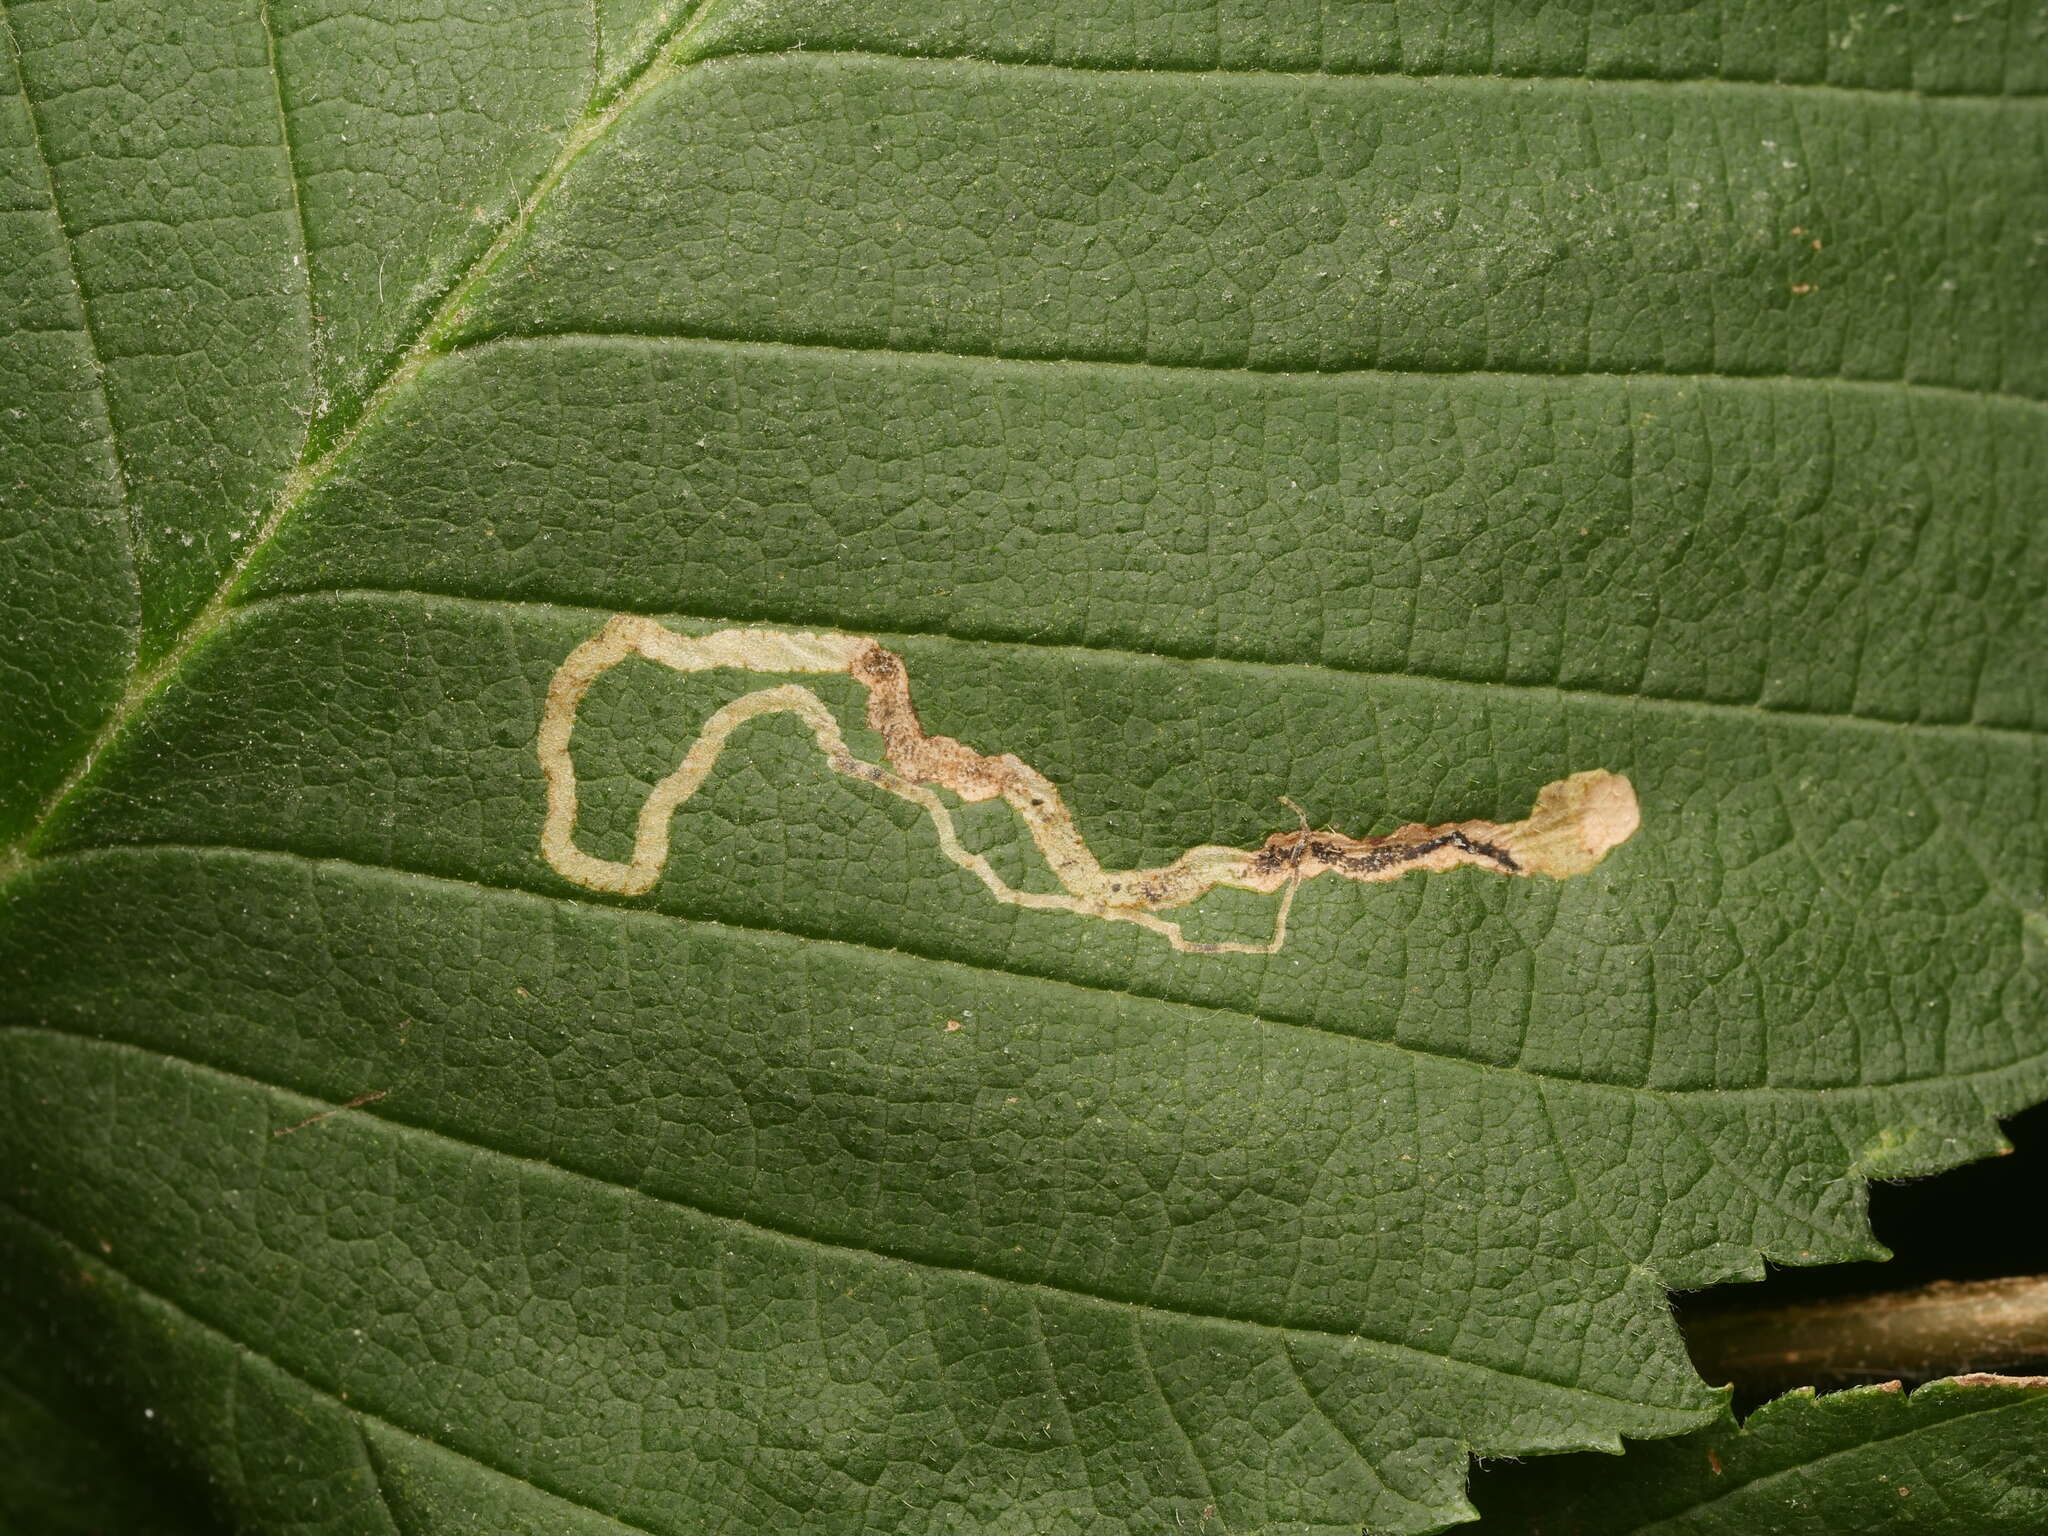 Image of Stigmella lemniscella (Zeller 1839) van Nieukerken 1986